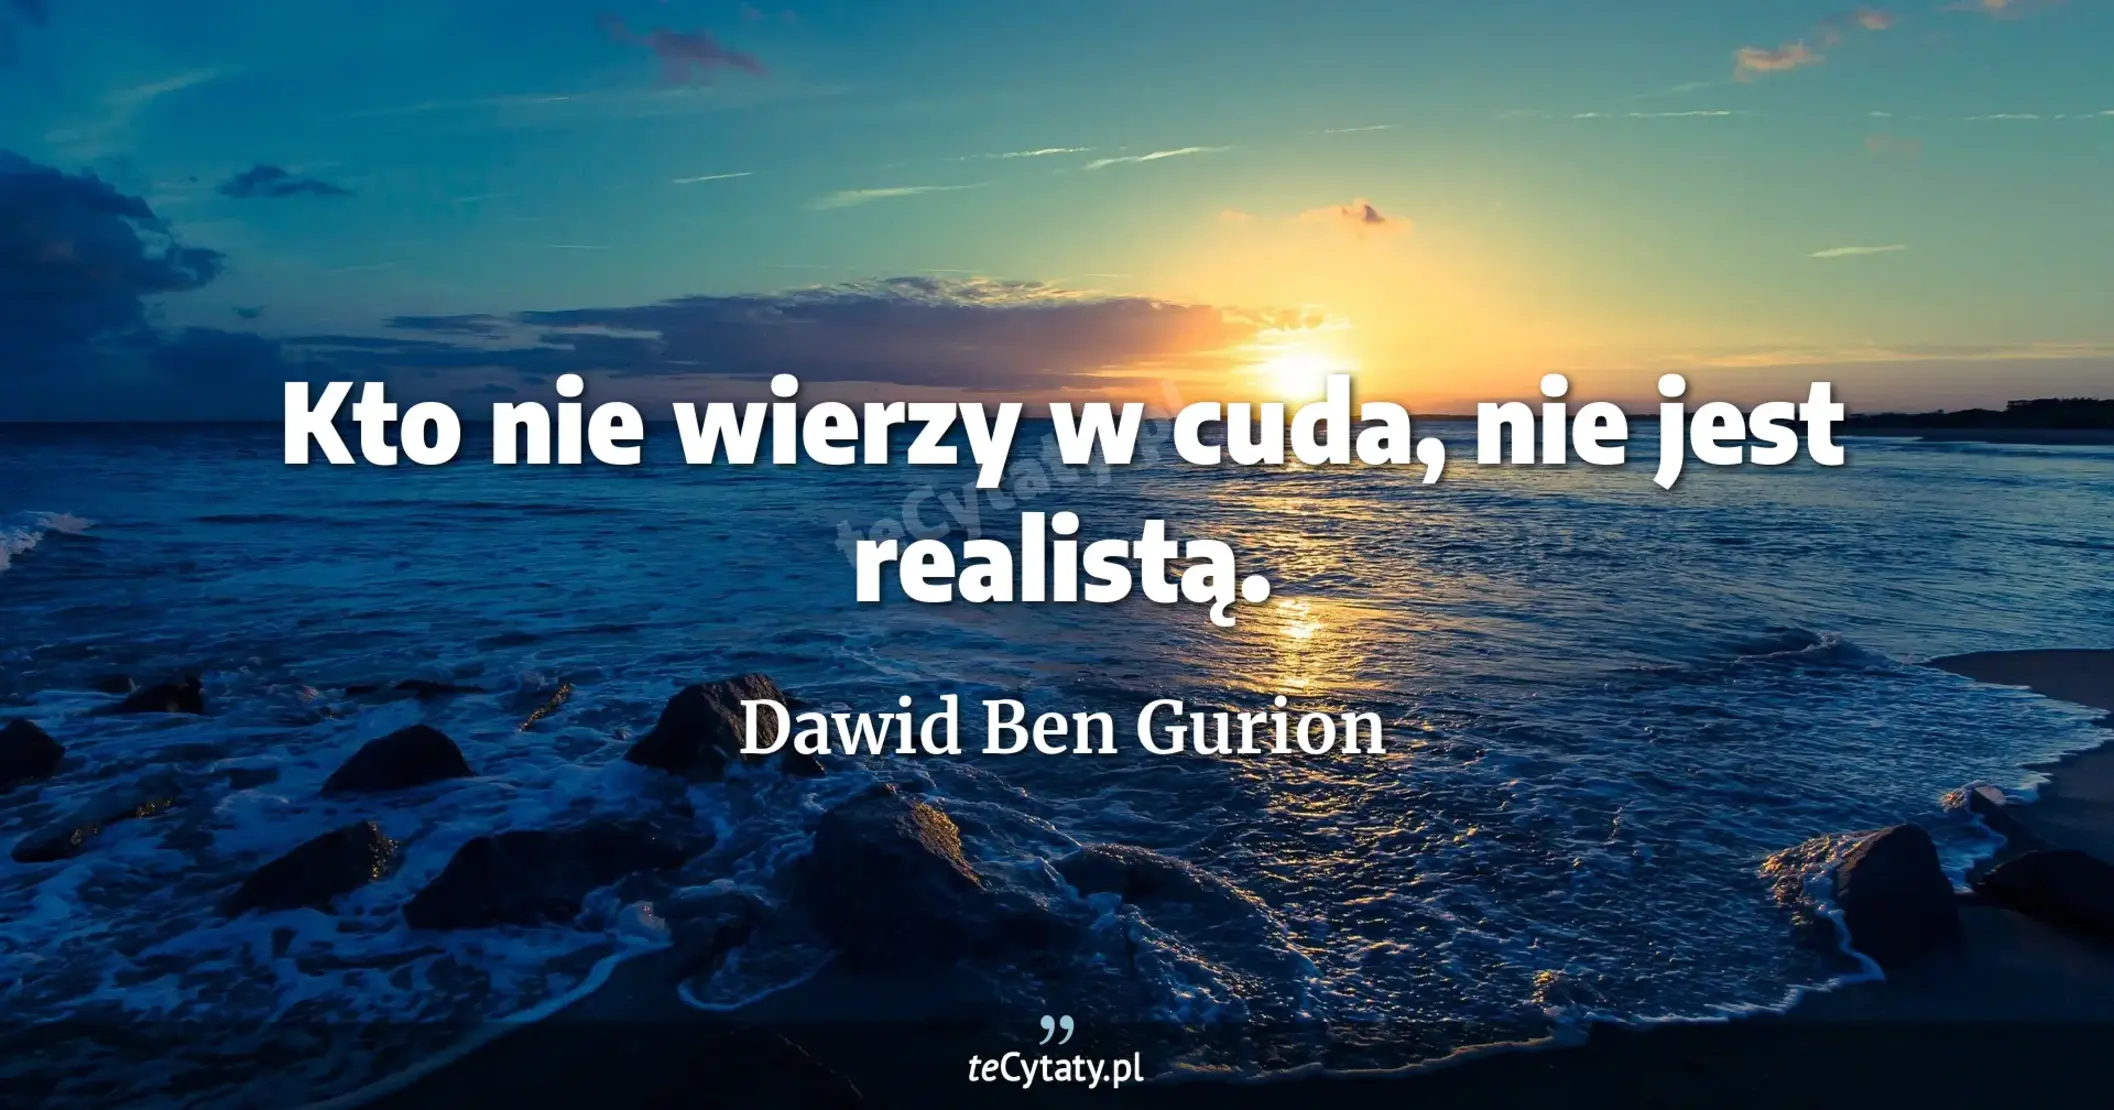 Kto nie wierzy w cuda, nie jest realistą. - Dawid Ben Gurion